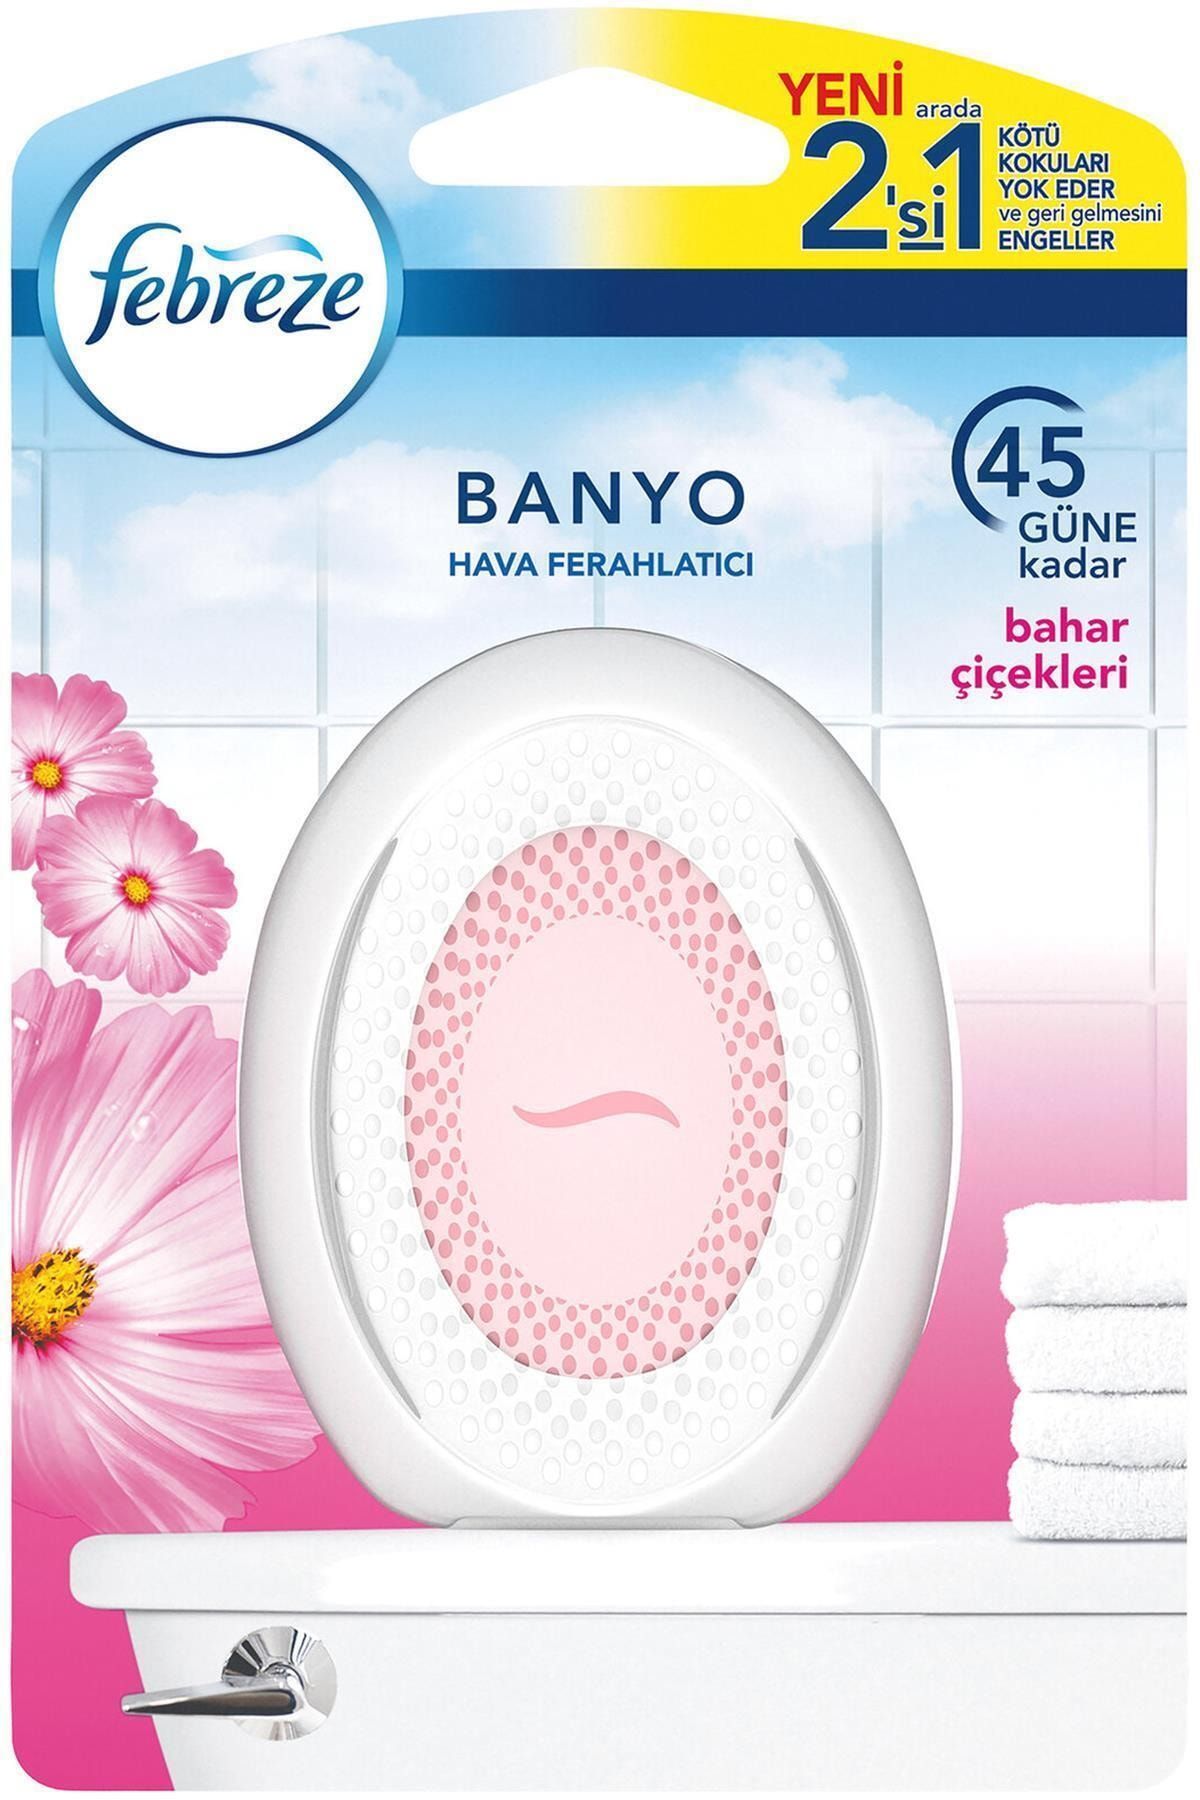 Febreze Marka: Banyo Hava Ferahlatıcı Bahar Çiçekleri Kategori: Bulaşık Parlatıcısı